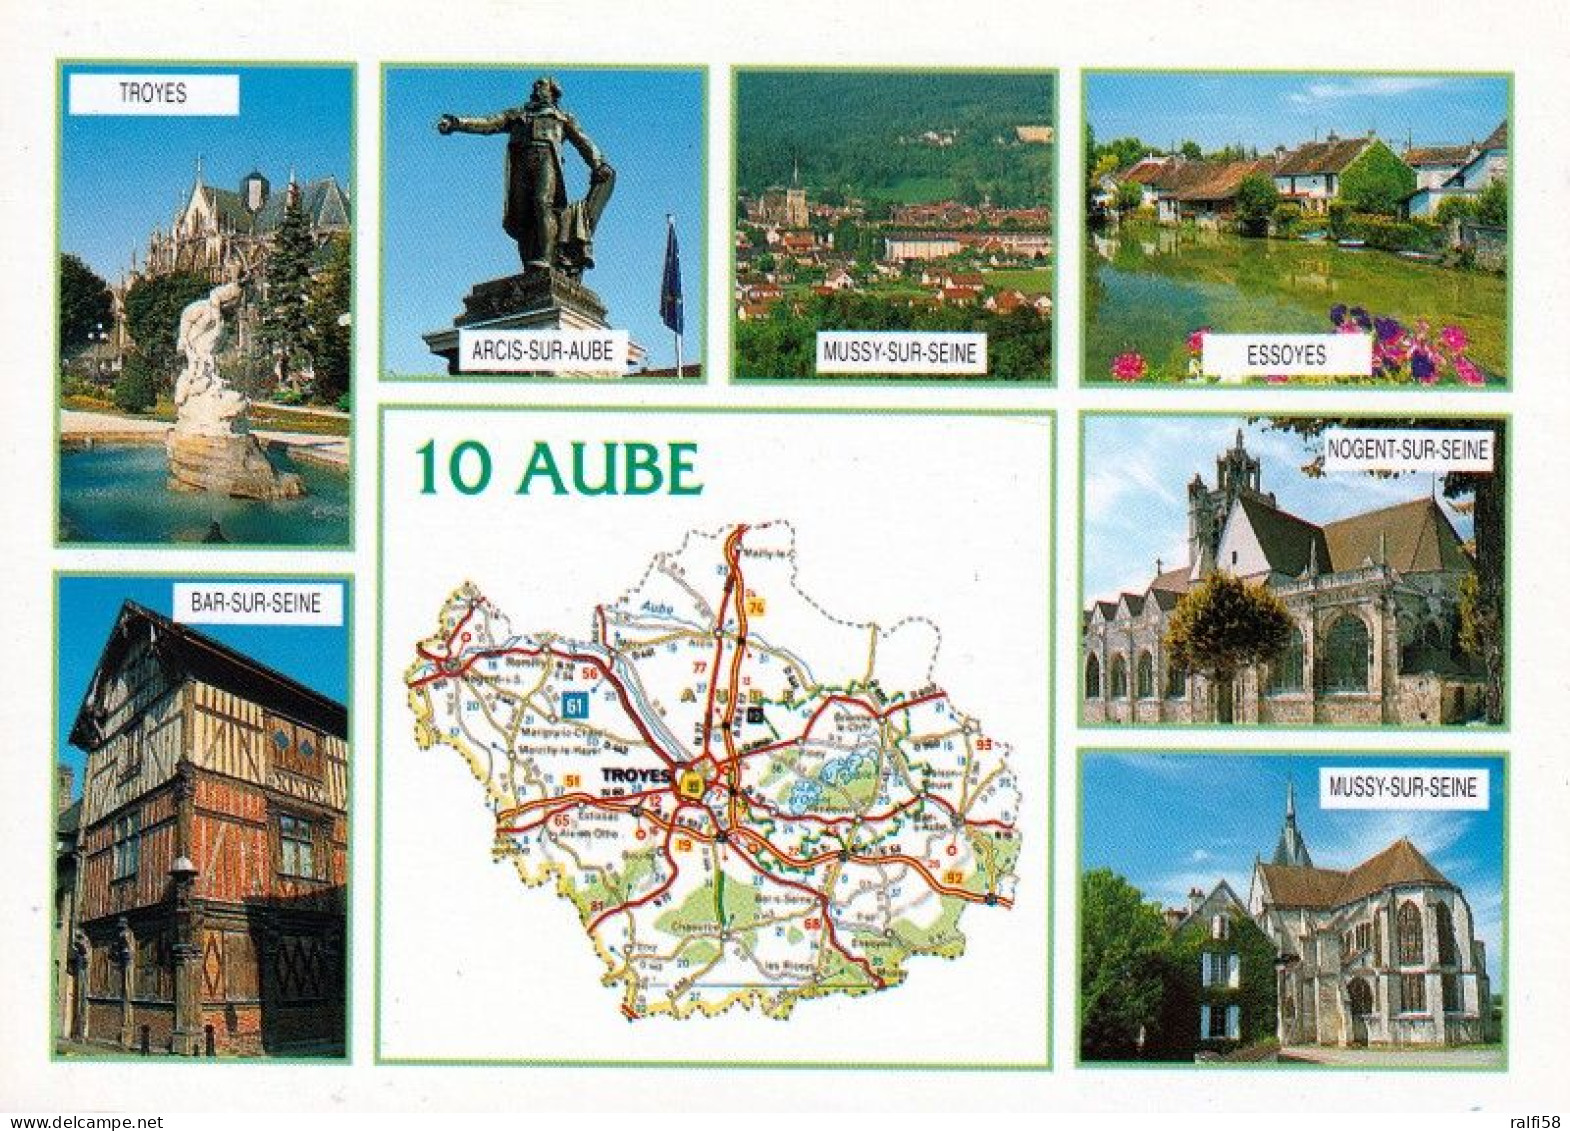 1 Map Of France * 1 Ansichtskarte Mit Der Landkarte - Département Aube - Ordnungsnummer 10 * - Landkaarten